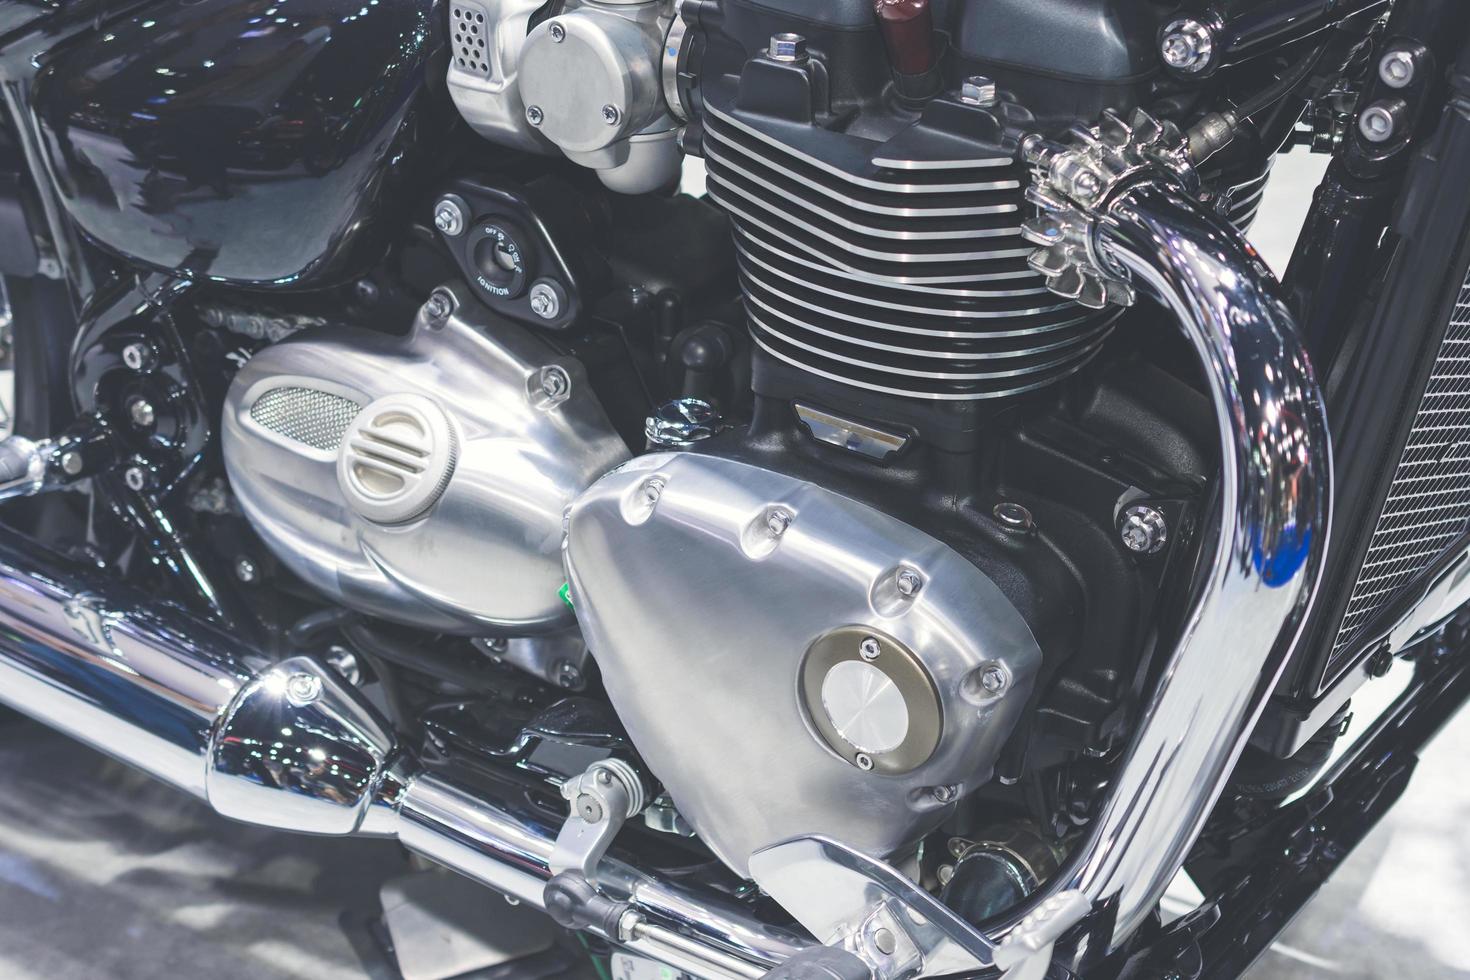 motor da motocicleta, detalhe do motor da motocicleta. foto